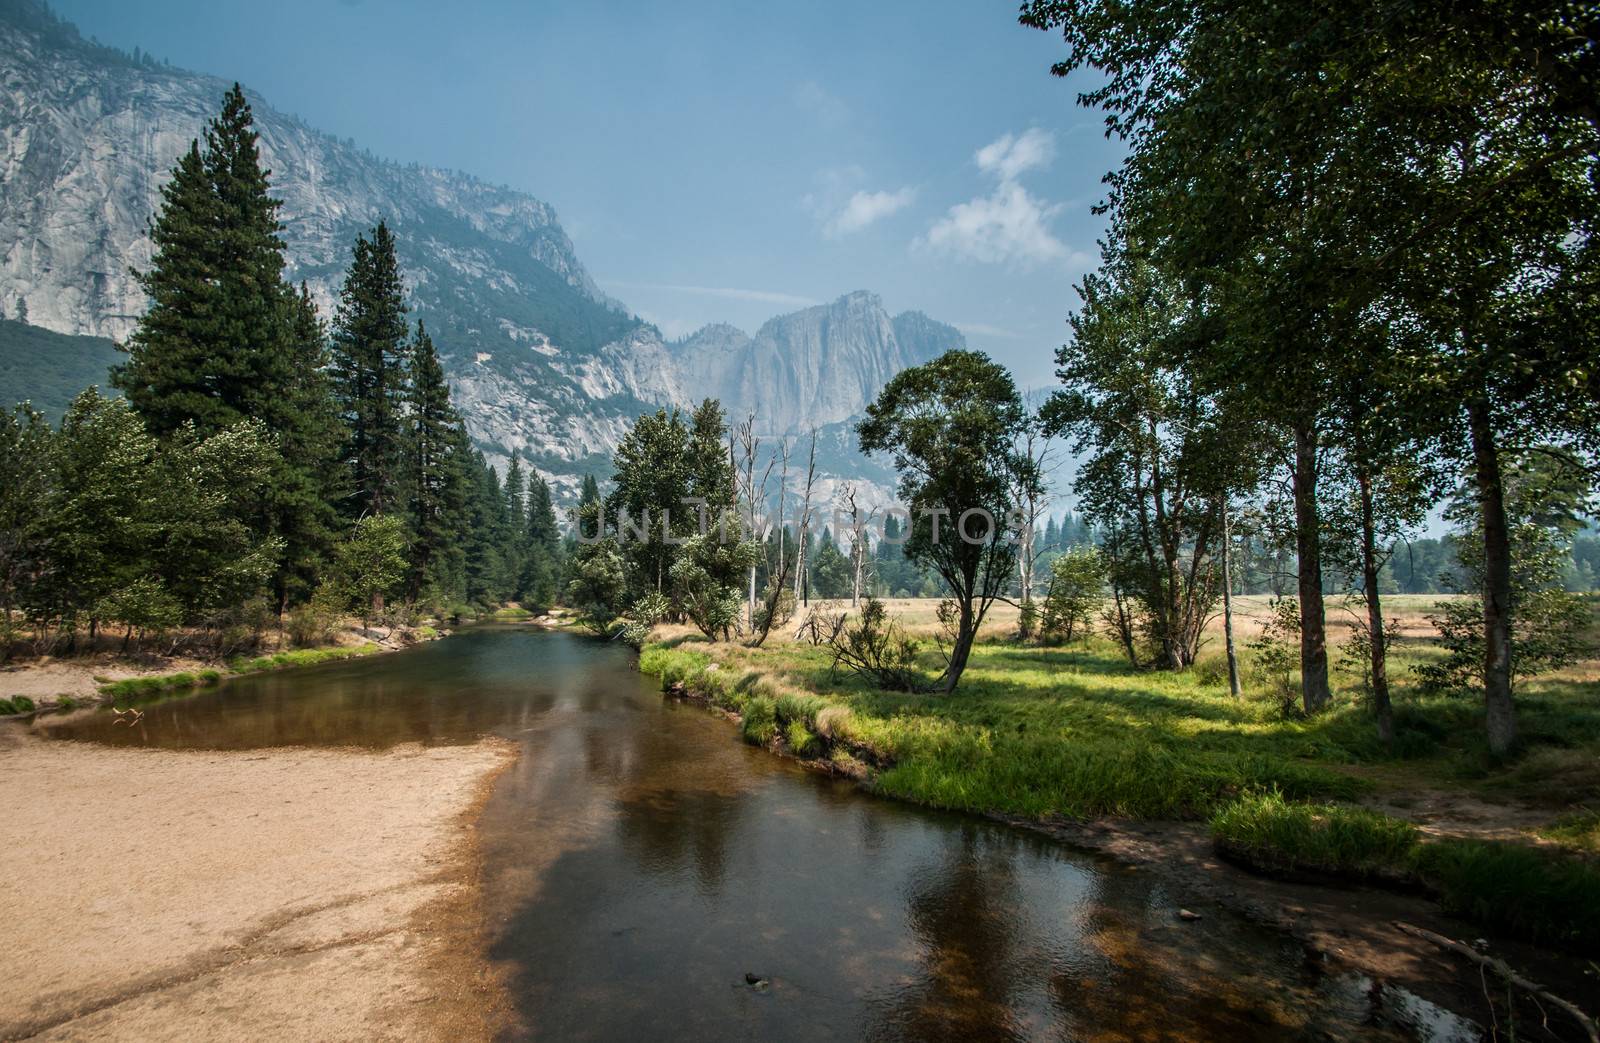 Yosemite nice river by weltreisendertj